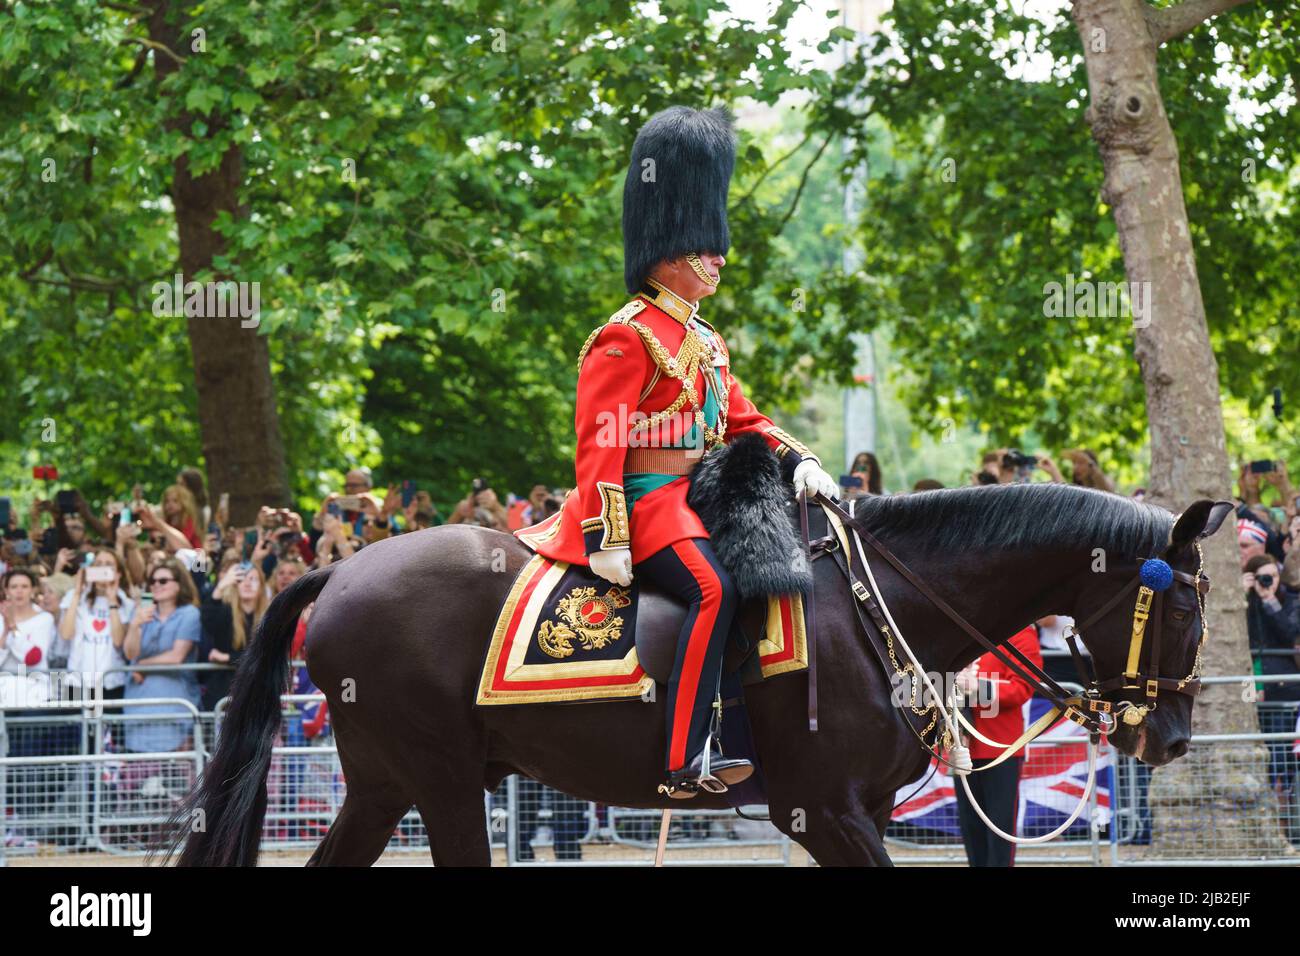 LONDRES - 2 JUIN : le Prince Charles, le Prince de Galles, descend dans le centre commercial, lors de la cérémonie de Trooping the Color sur 2 juin 2022, dans le centre de Londres. Photo de David Levenson crédit: David Levenson/Alay Live News Banque D'Images